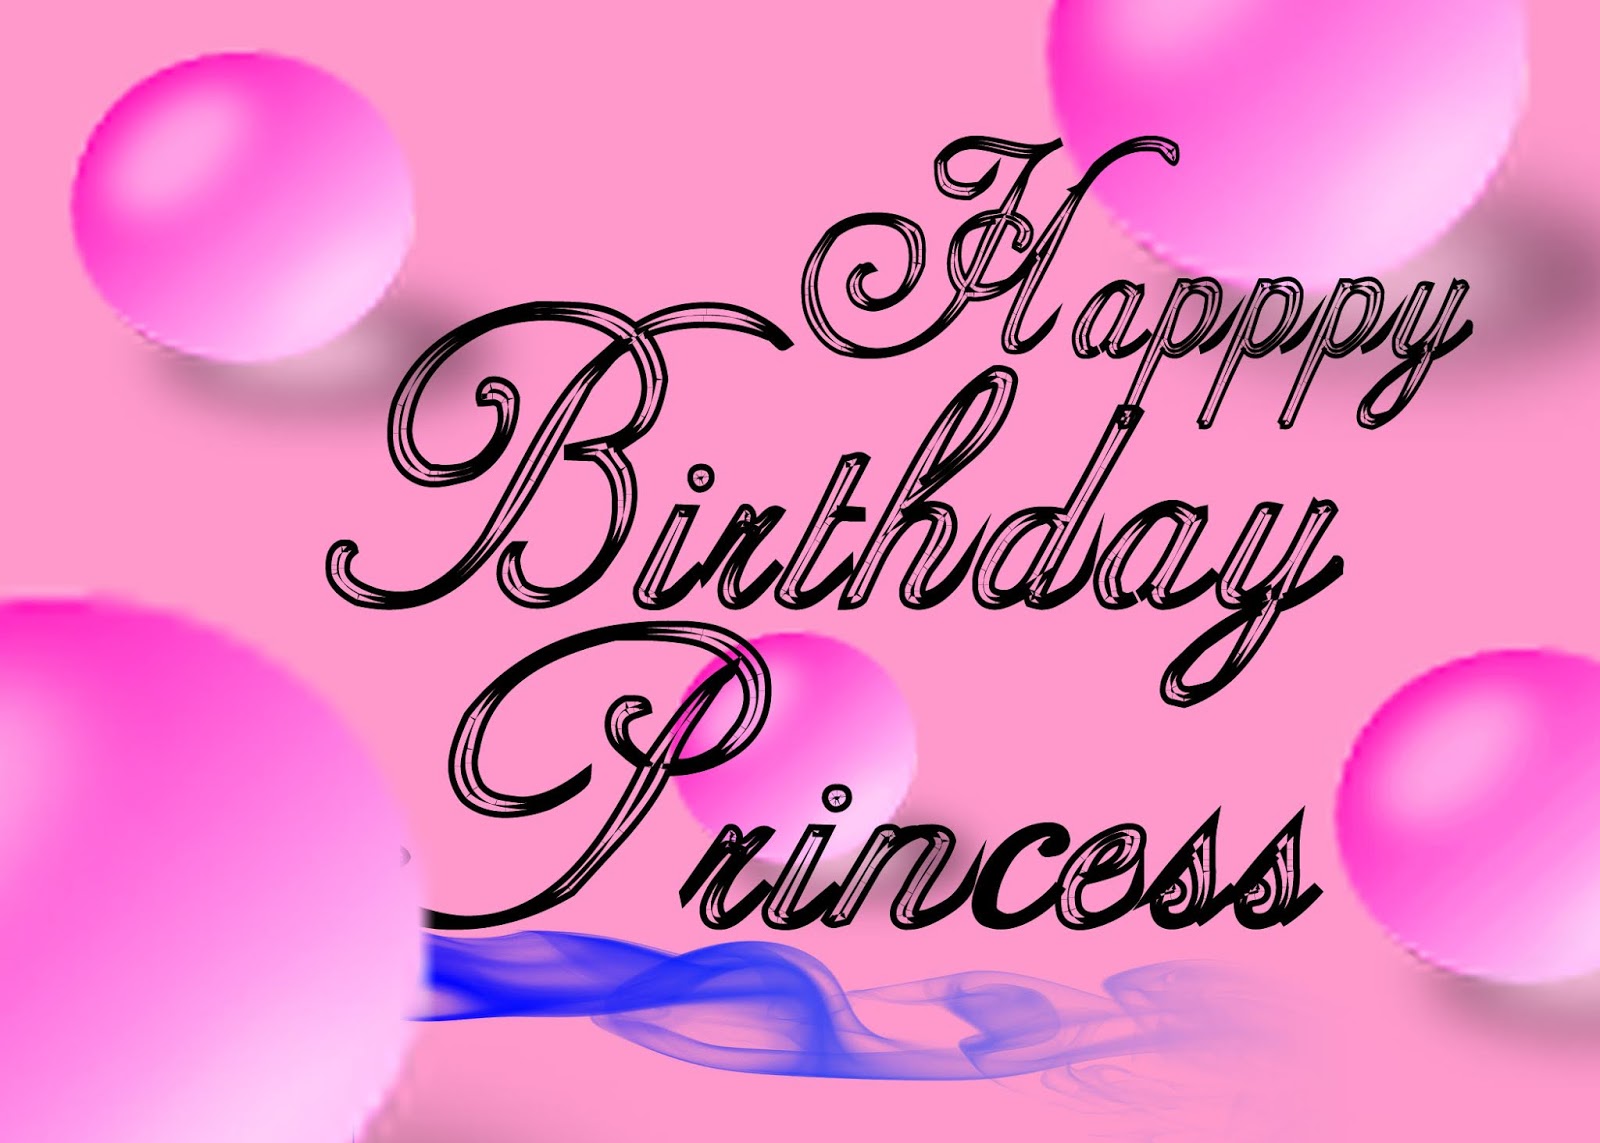 जन्मदिन की बधाई कार्ड birthday greetings cards birthday wishes for